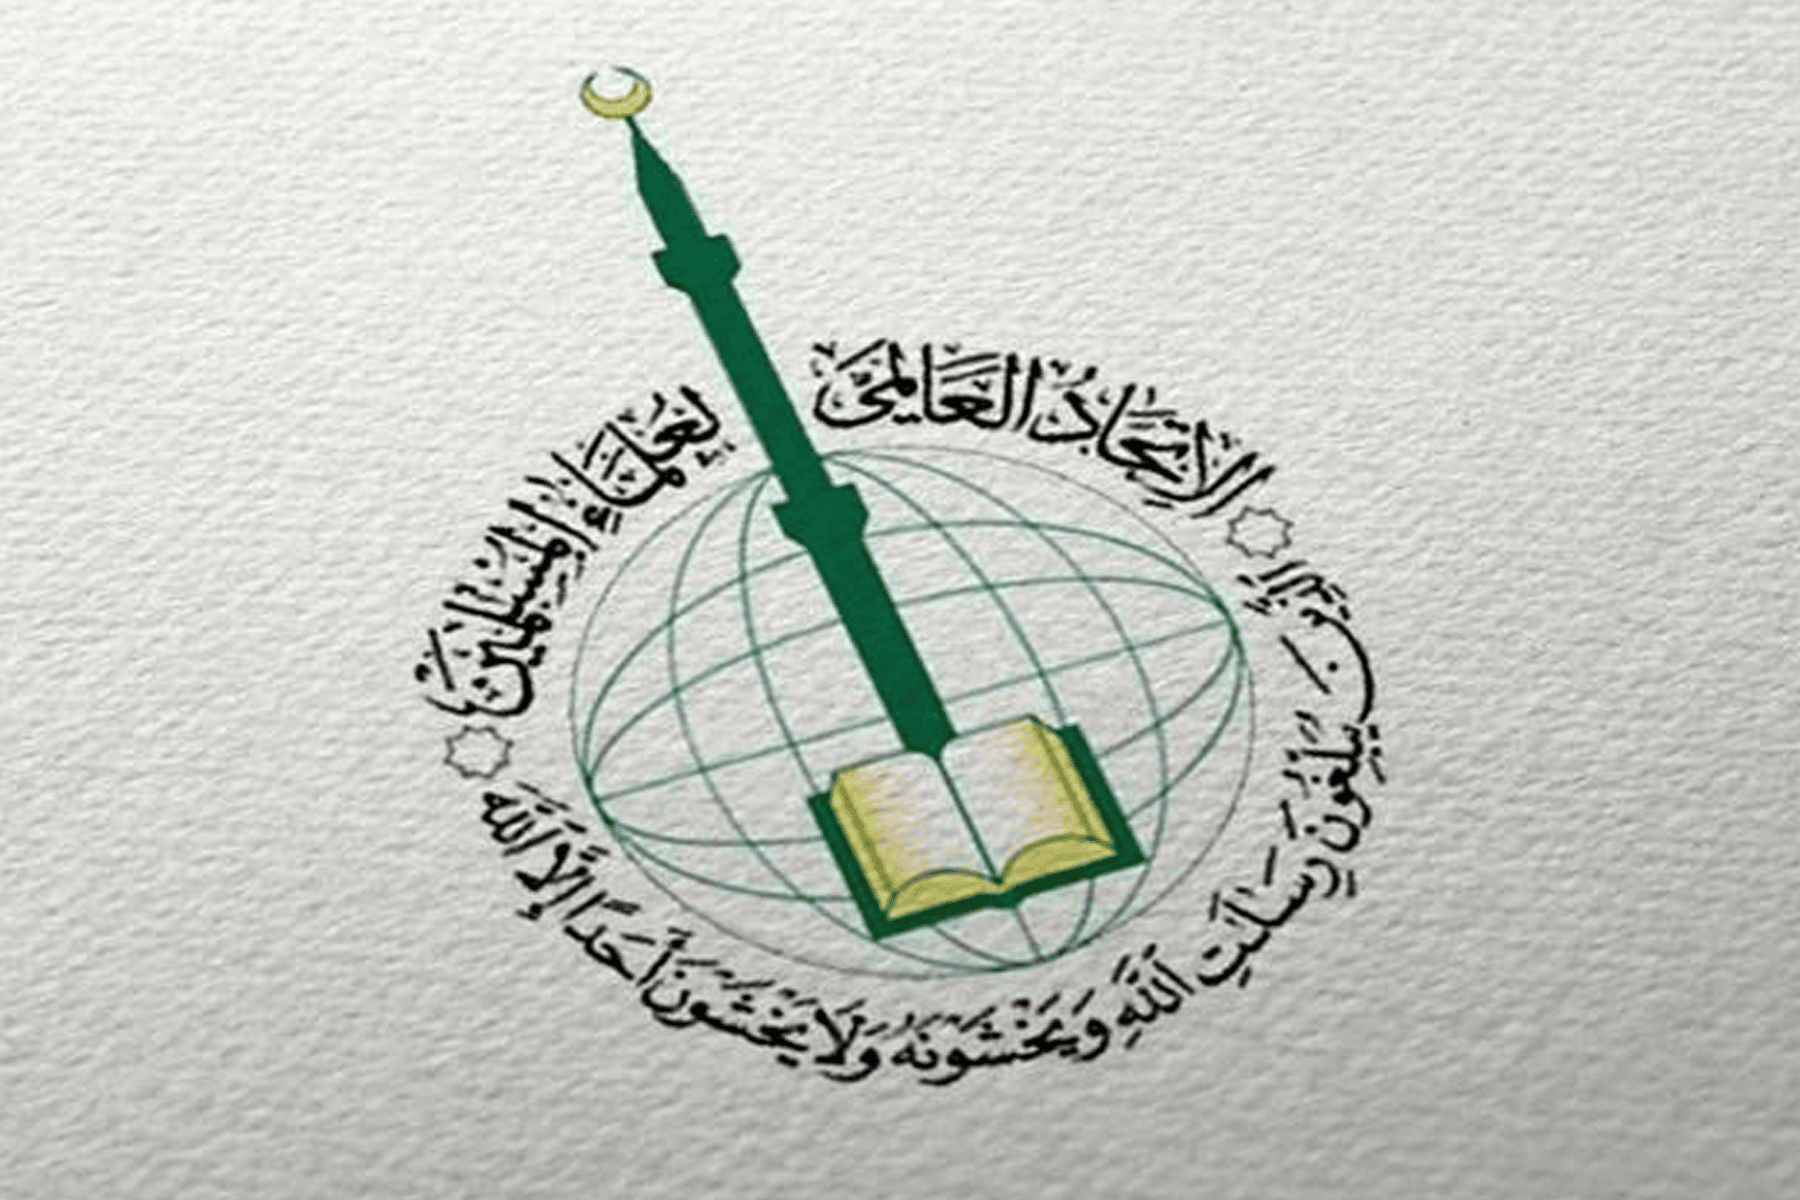 بيان اتحاد علماء المسلمين watanserb.com